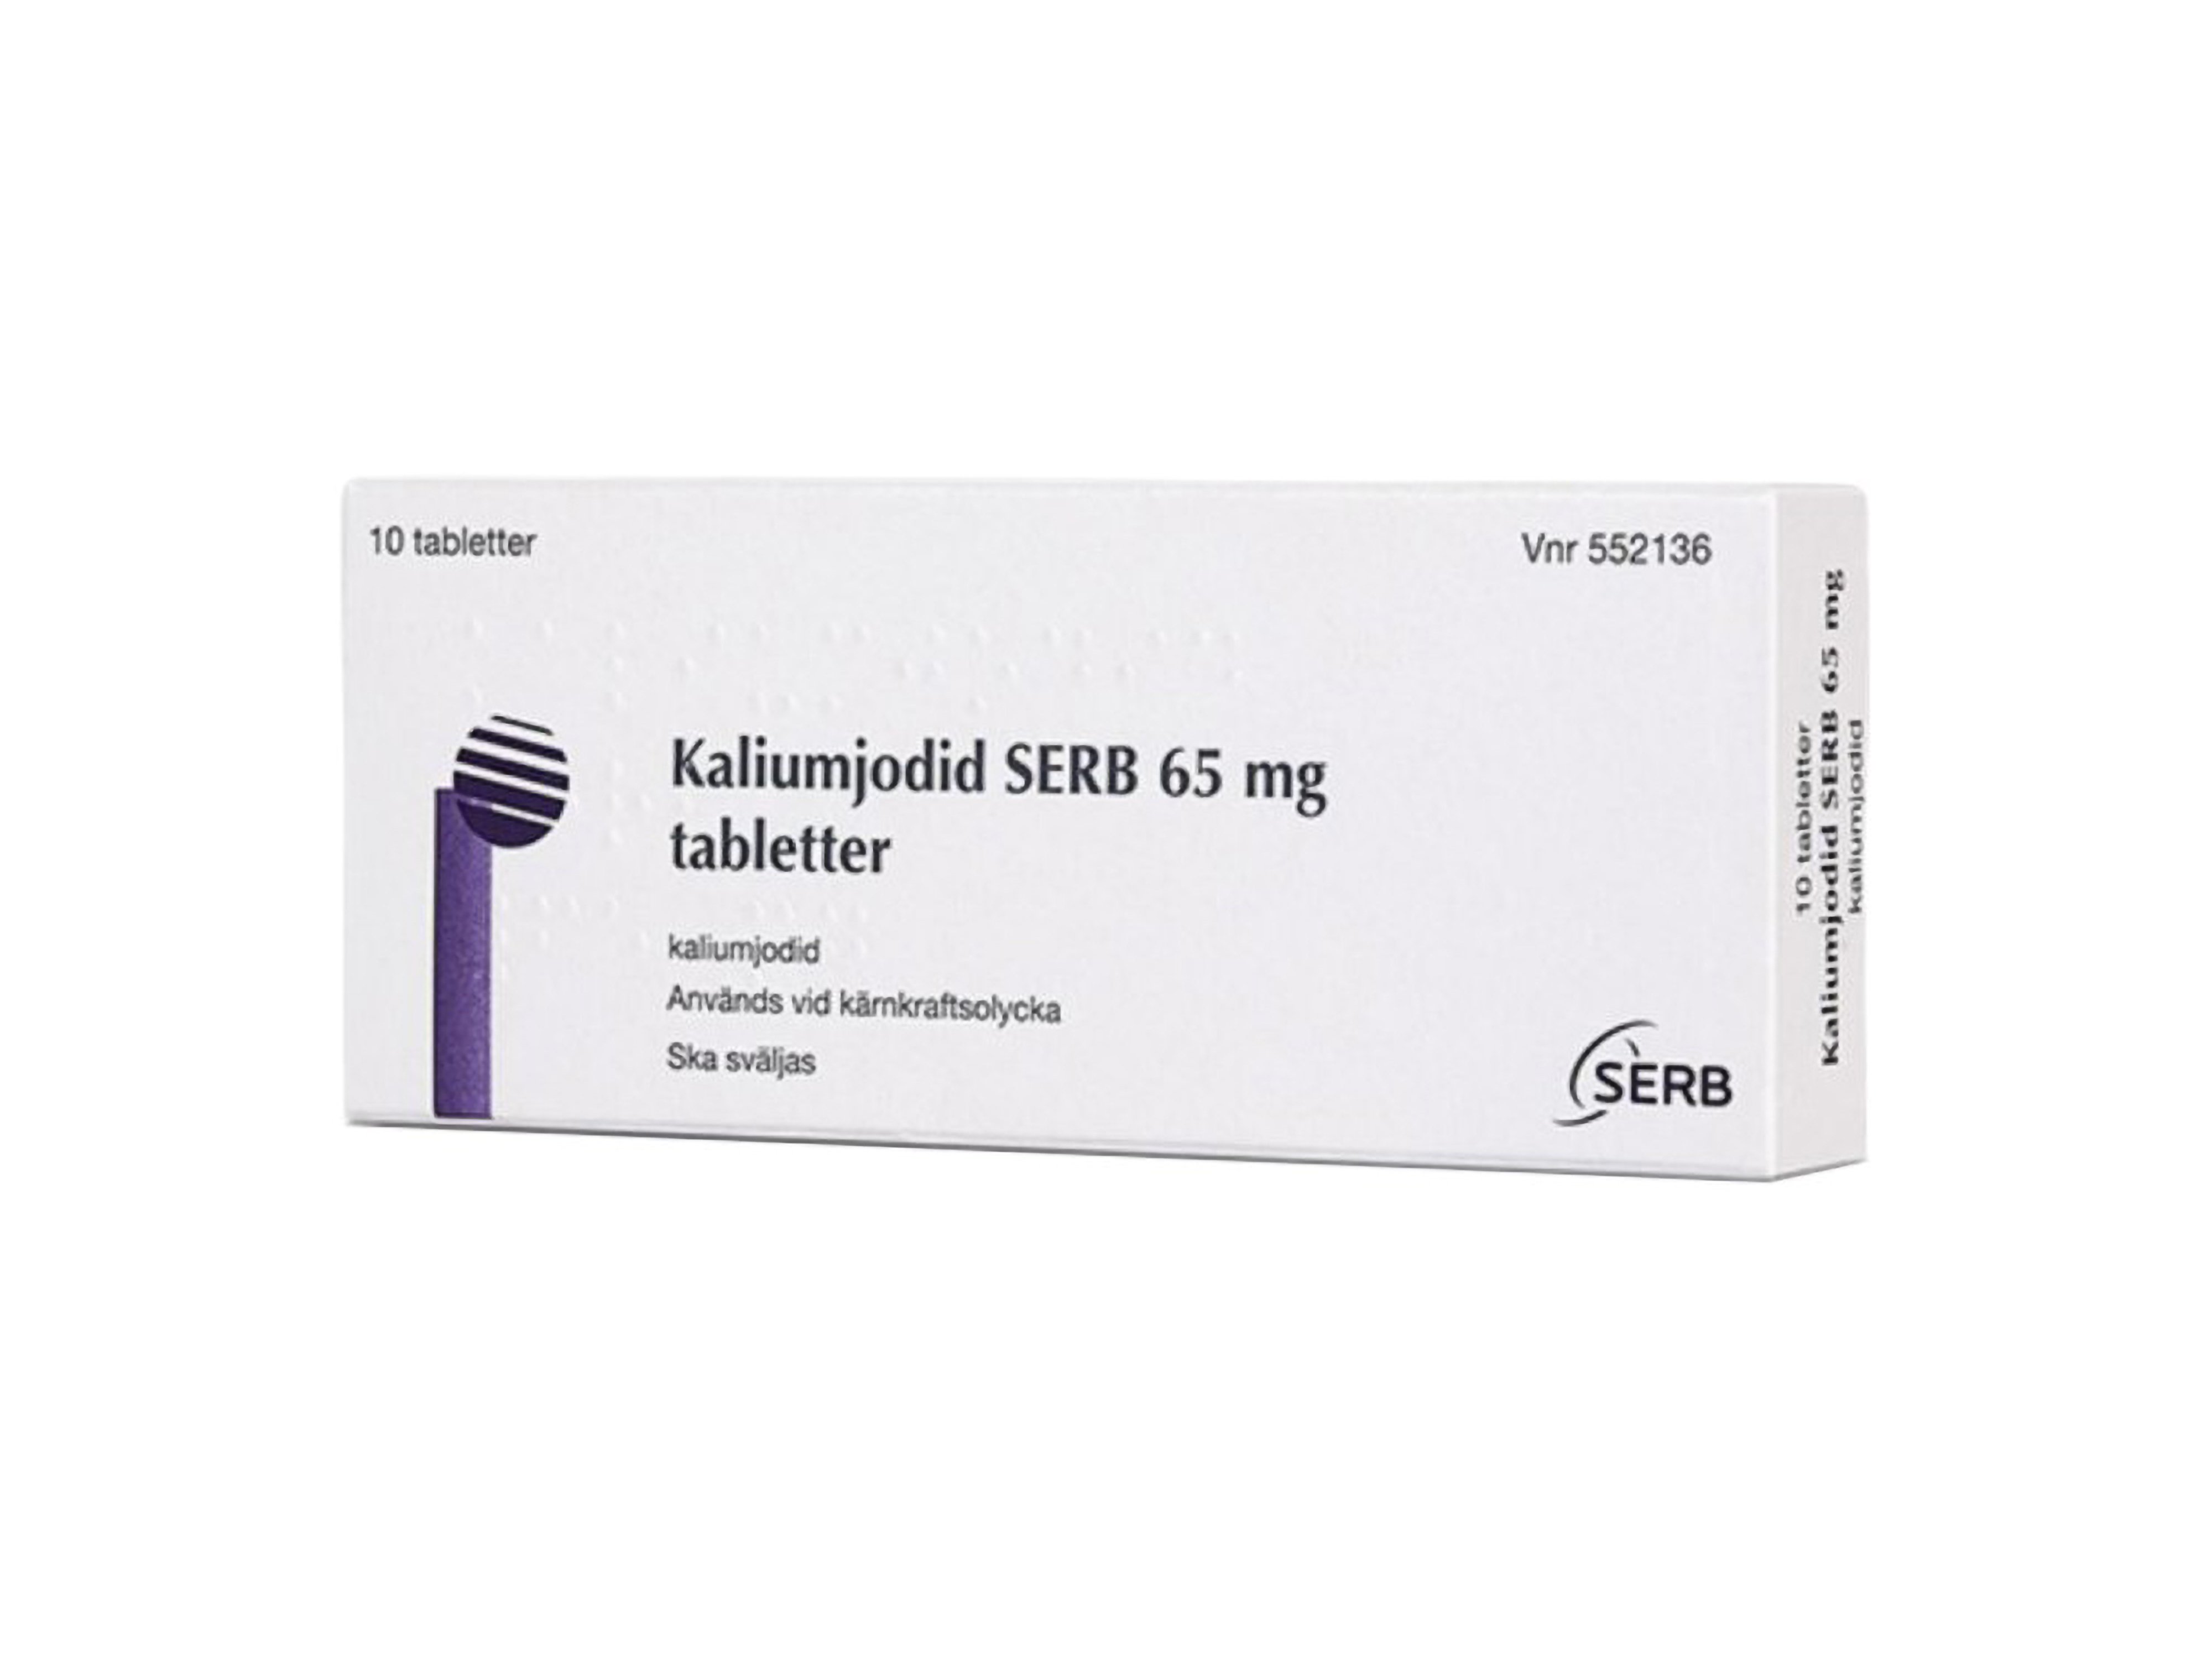 SERB Kaliumjodid 65 mg tabletter, 10 stk.